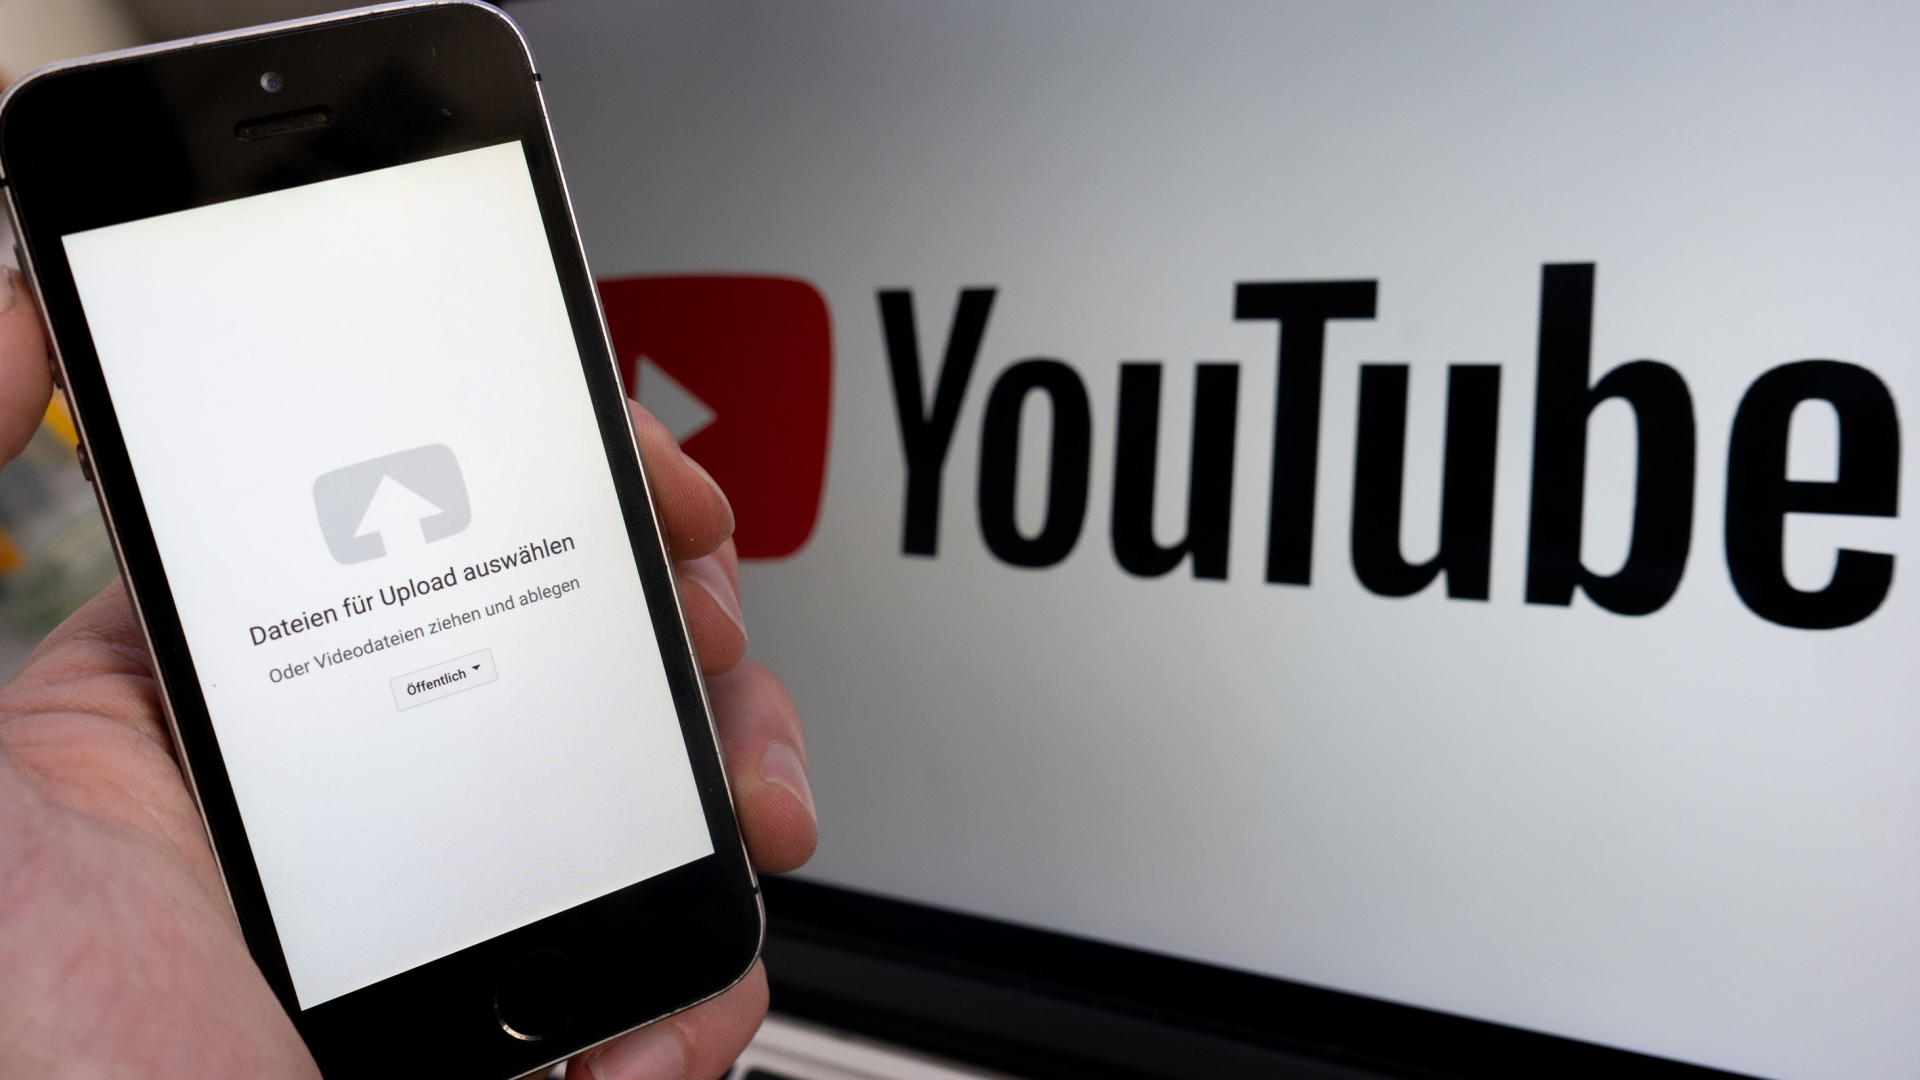 Ein Upload-Fenster der Video-Plattform Youtube ist auf einem Smartphone vor einem YouTube-Logo auf einem Bildschirm zu sehen.| Bildquelle: dpa